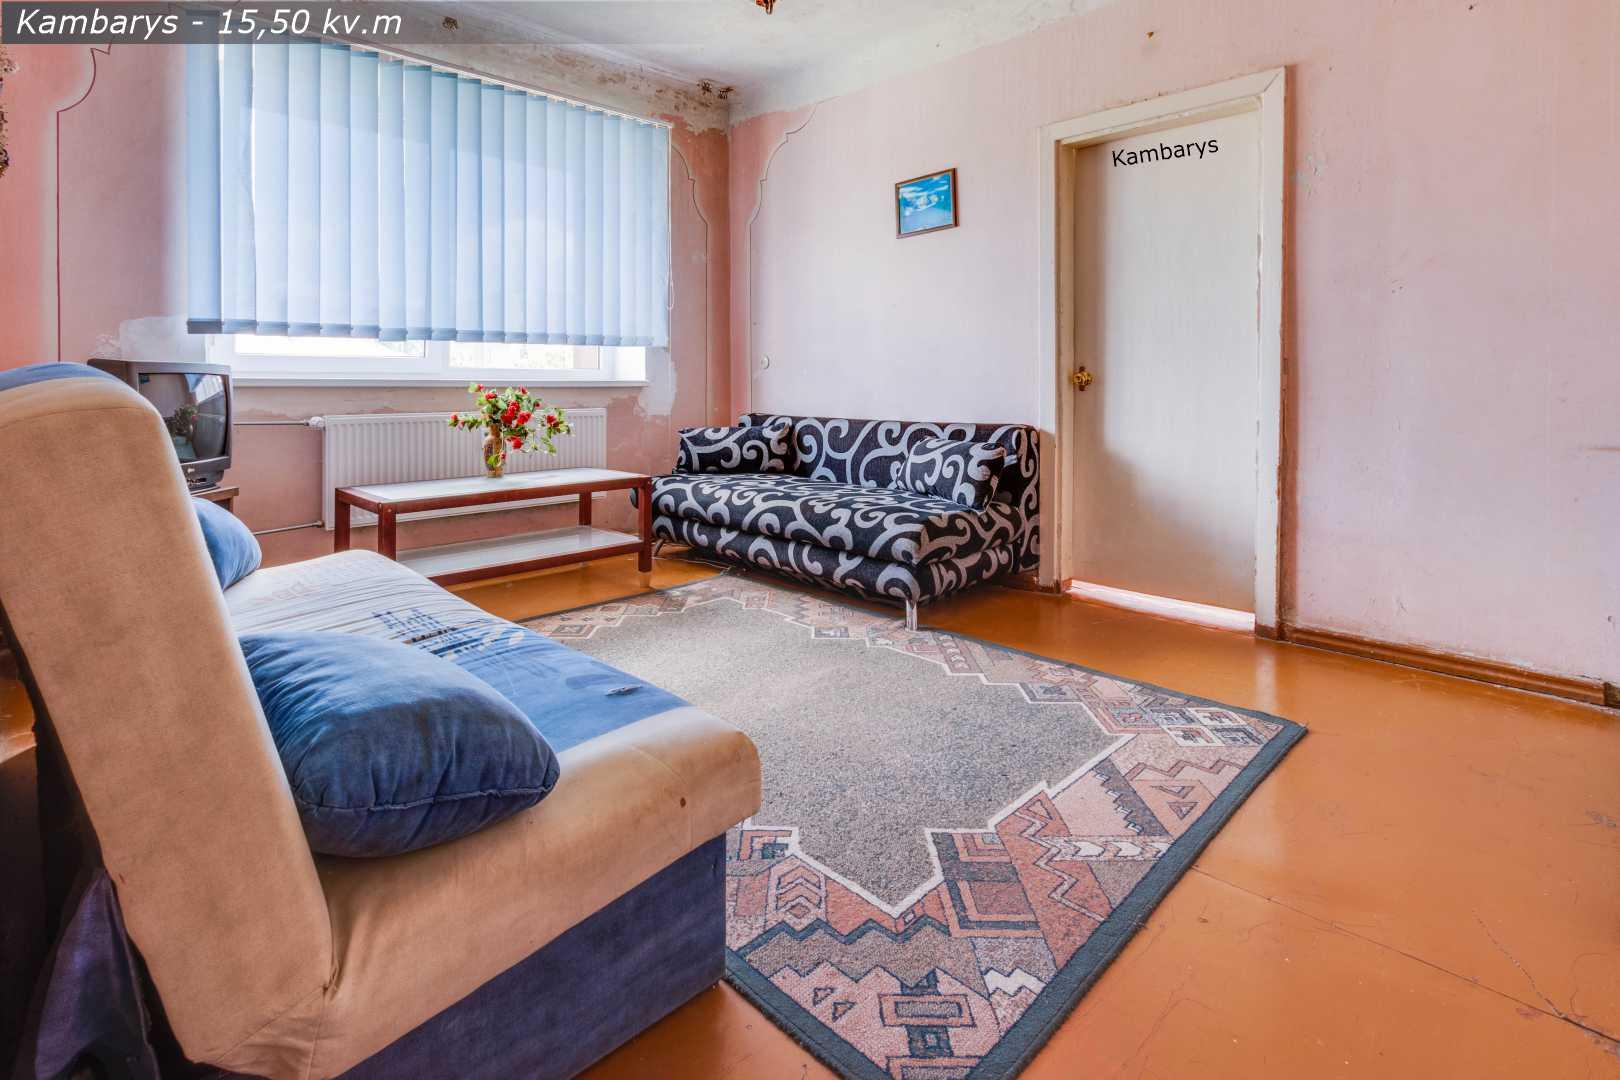 Parduodamas 2 kambarių butas renovuotame name, Radviliškio centre, Dariaus ir Girėno g.